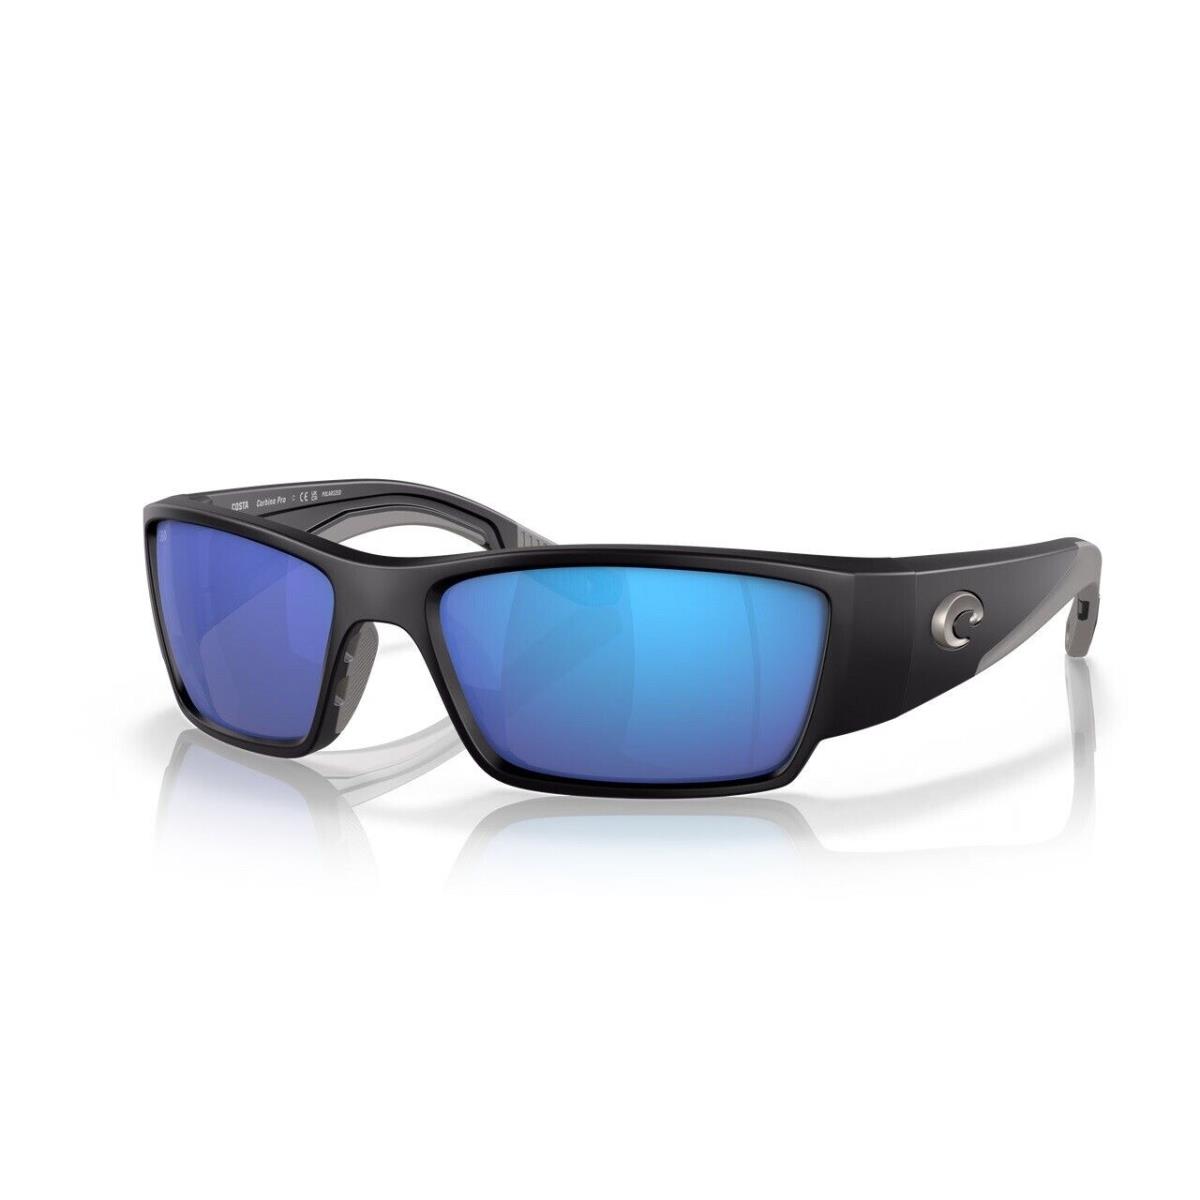 Costa Del Mar Corbina Pro Sunglasses Matte Black Frame w/ Blue Mirror Glass Lens